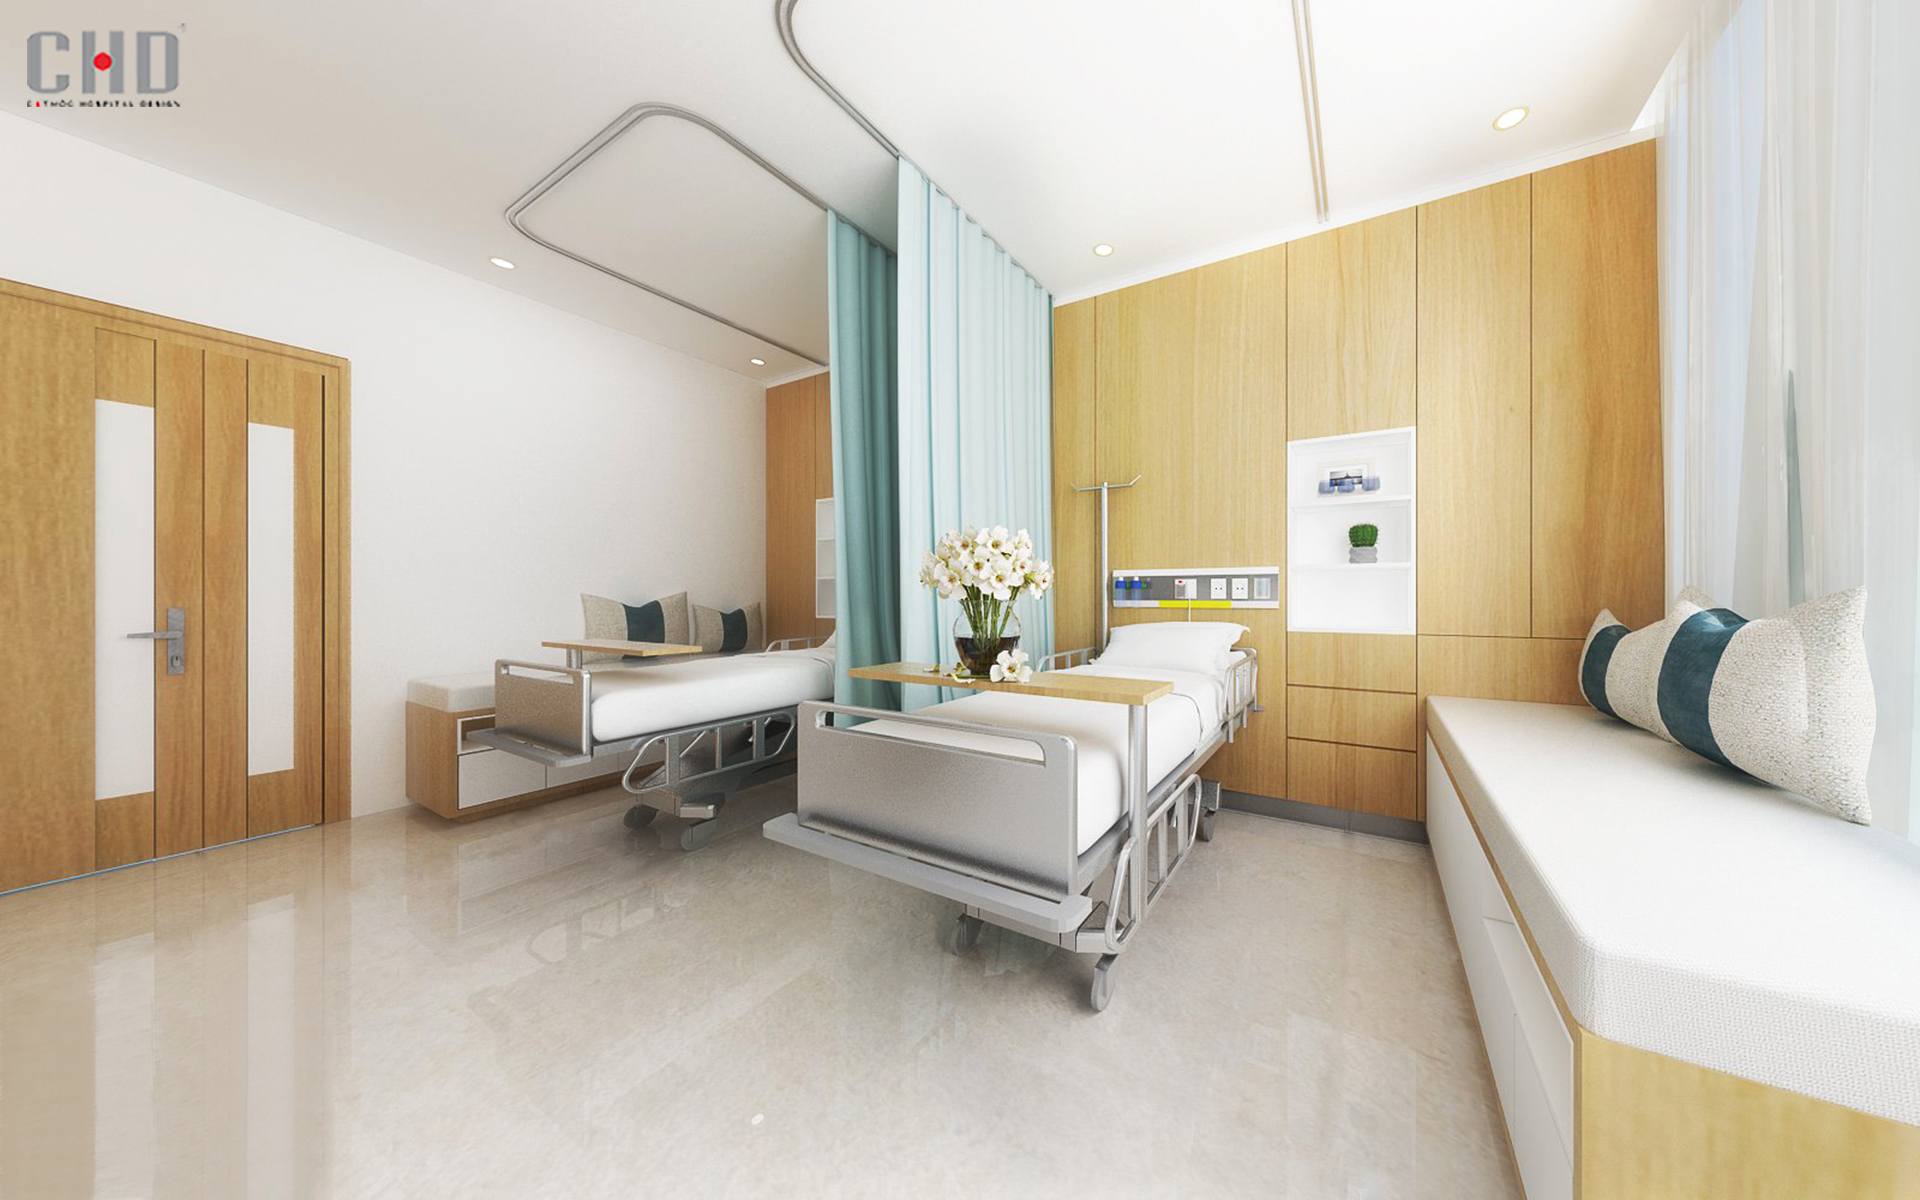 Kiến trúc bệnh viện ảnh hưởng đến sức khỏe bệnh nhân như thế nào?